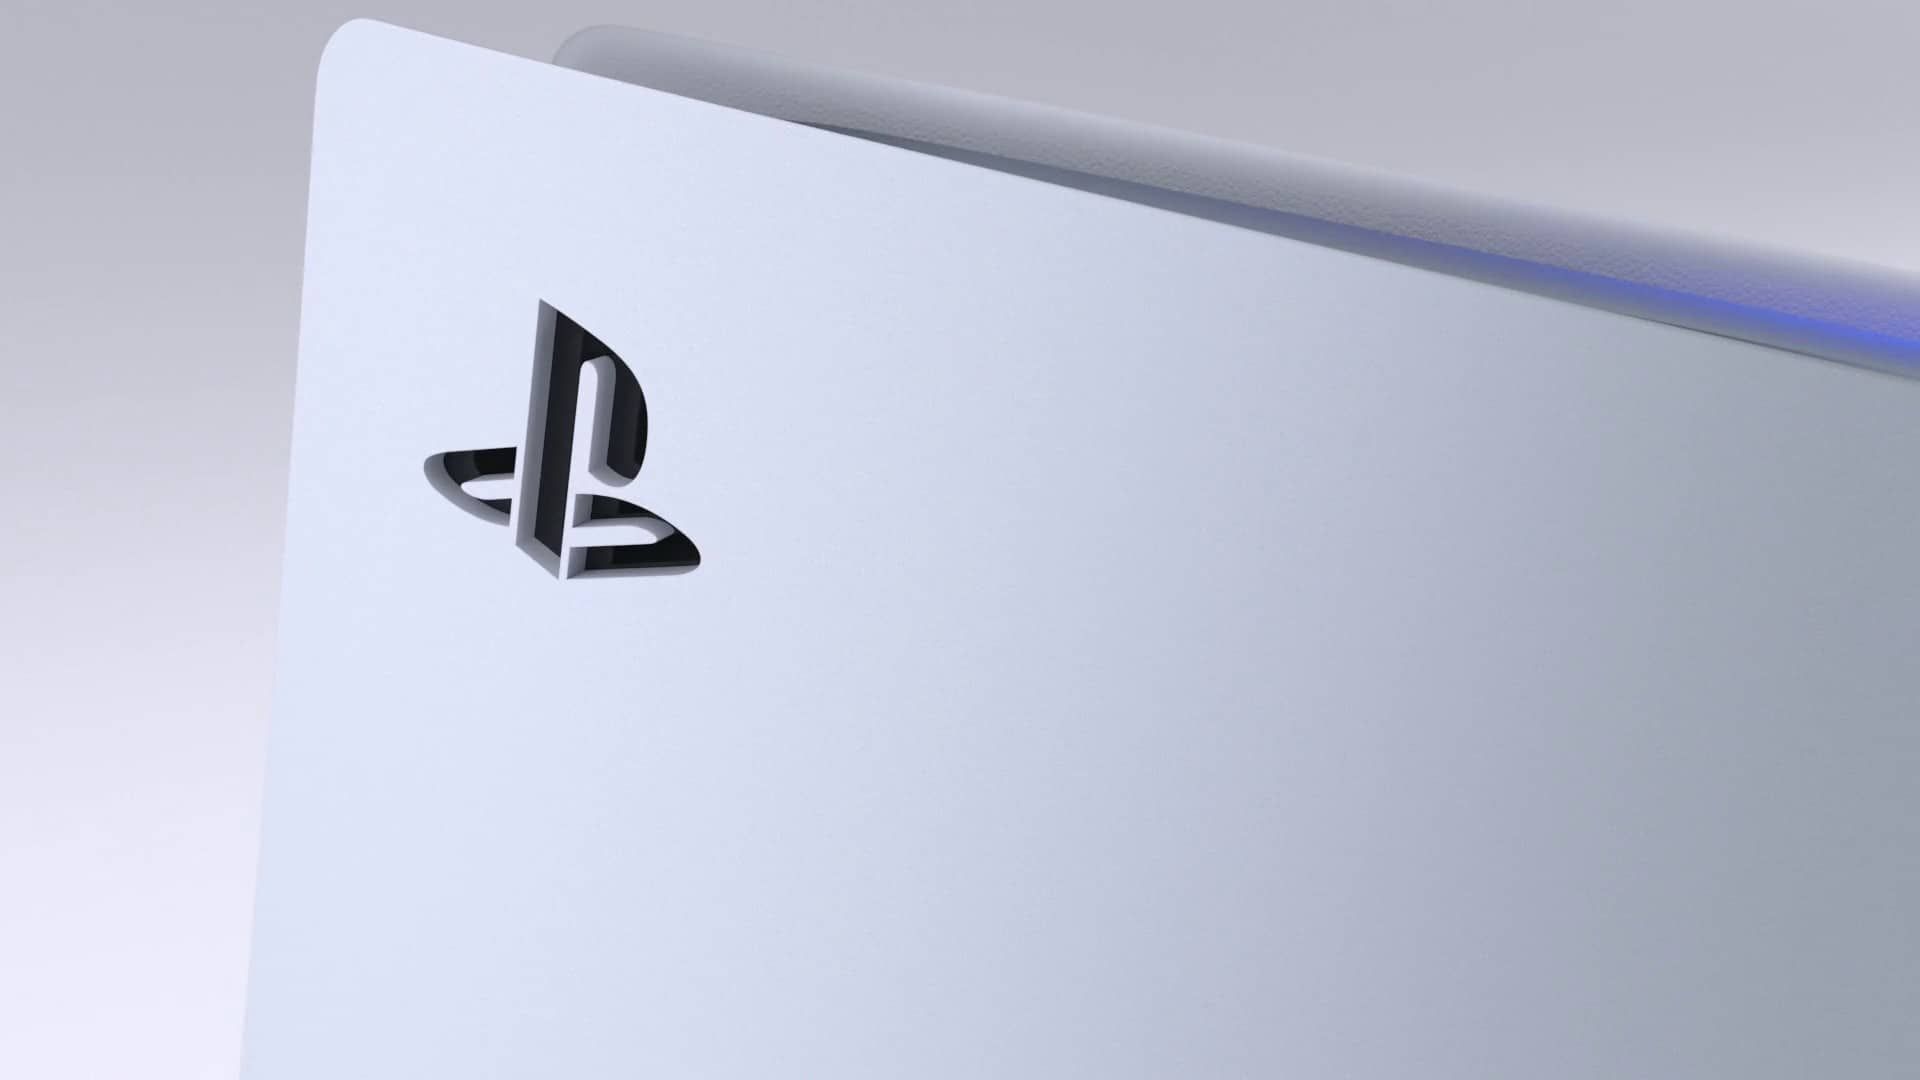 Sony partage ses résultats financiers, avec 10,1 millions de PS5 et 116,5 millions de PS4